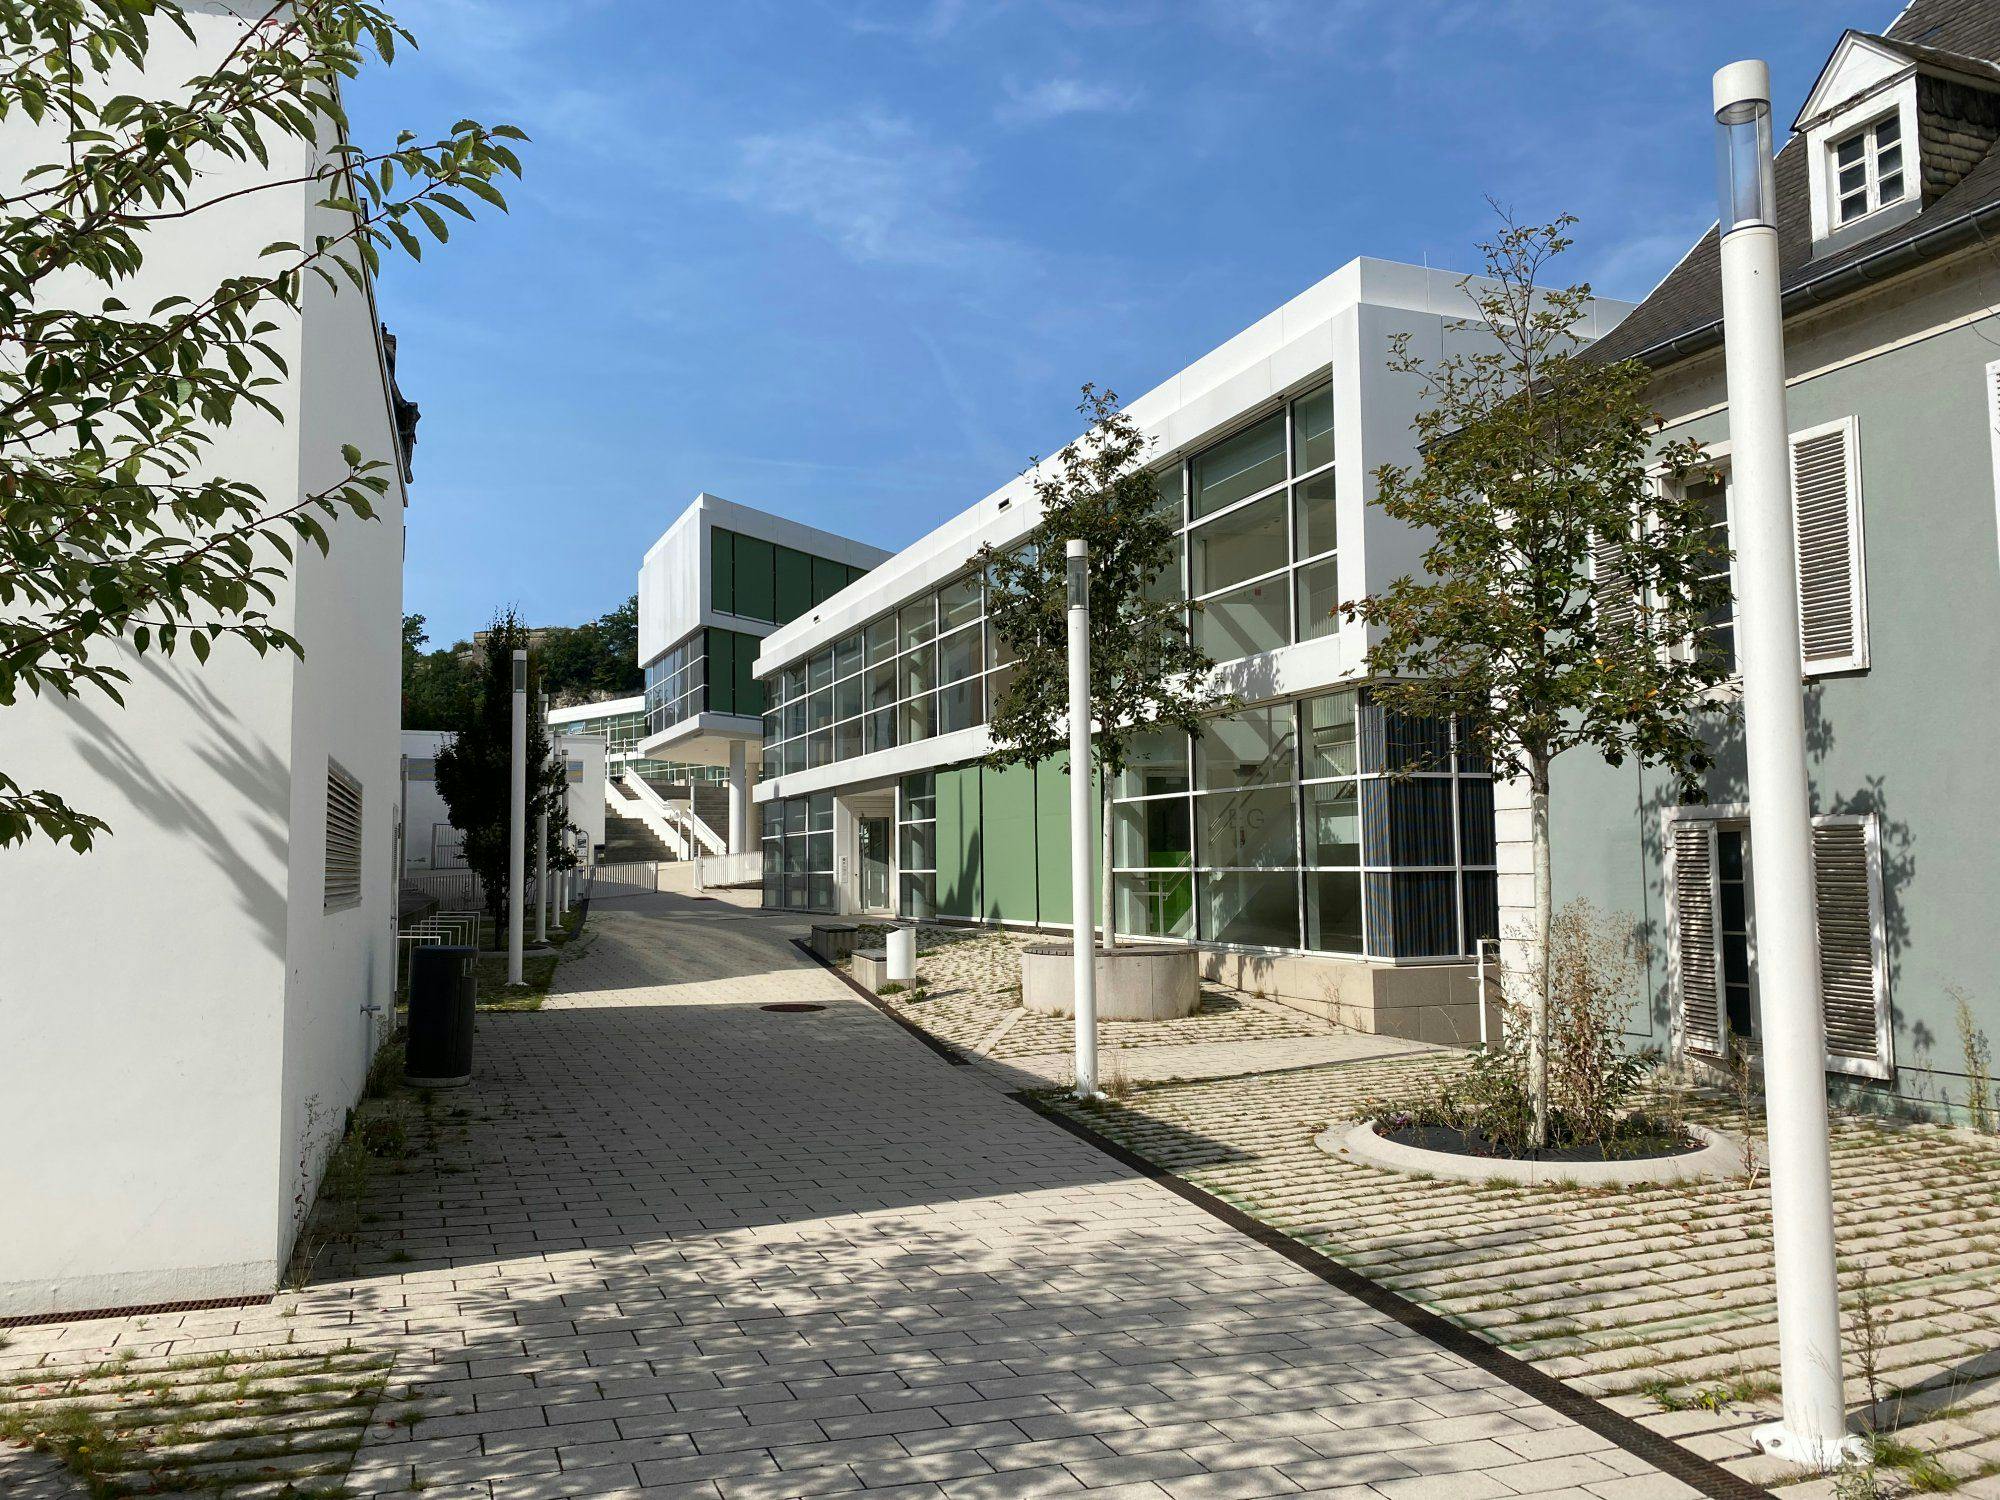 Clausen Central School, source: Ville de Luxembourg